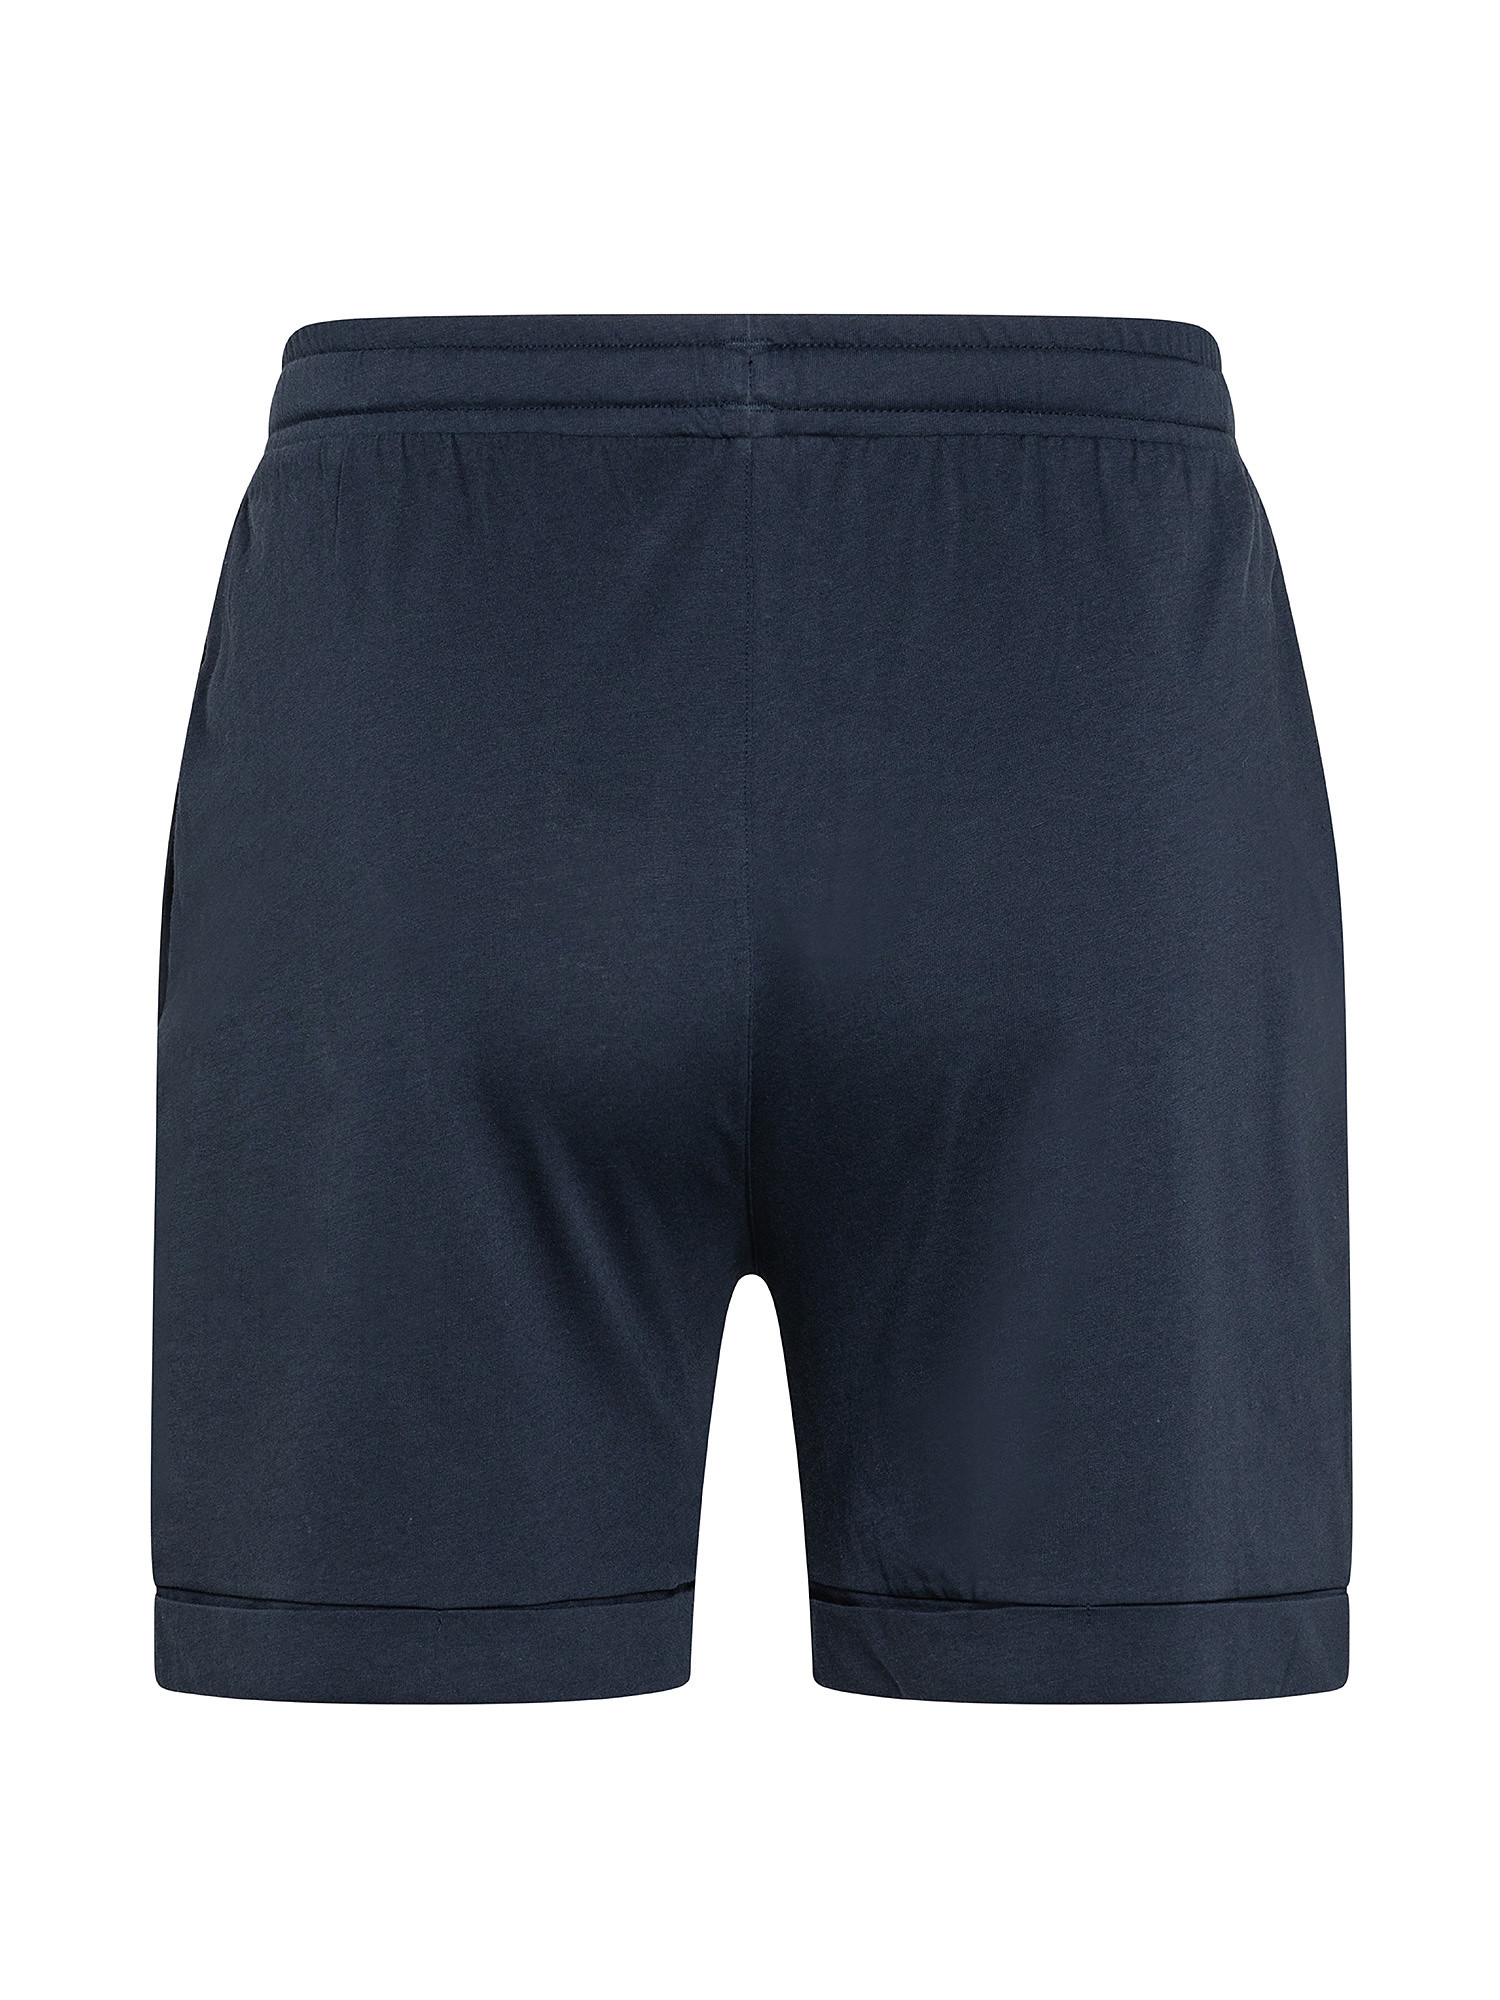 Shorts with logo, Blue, large image number 1